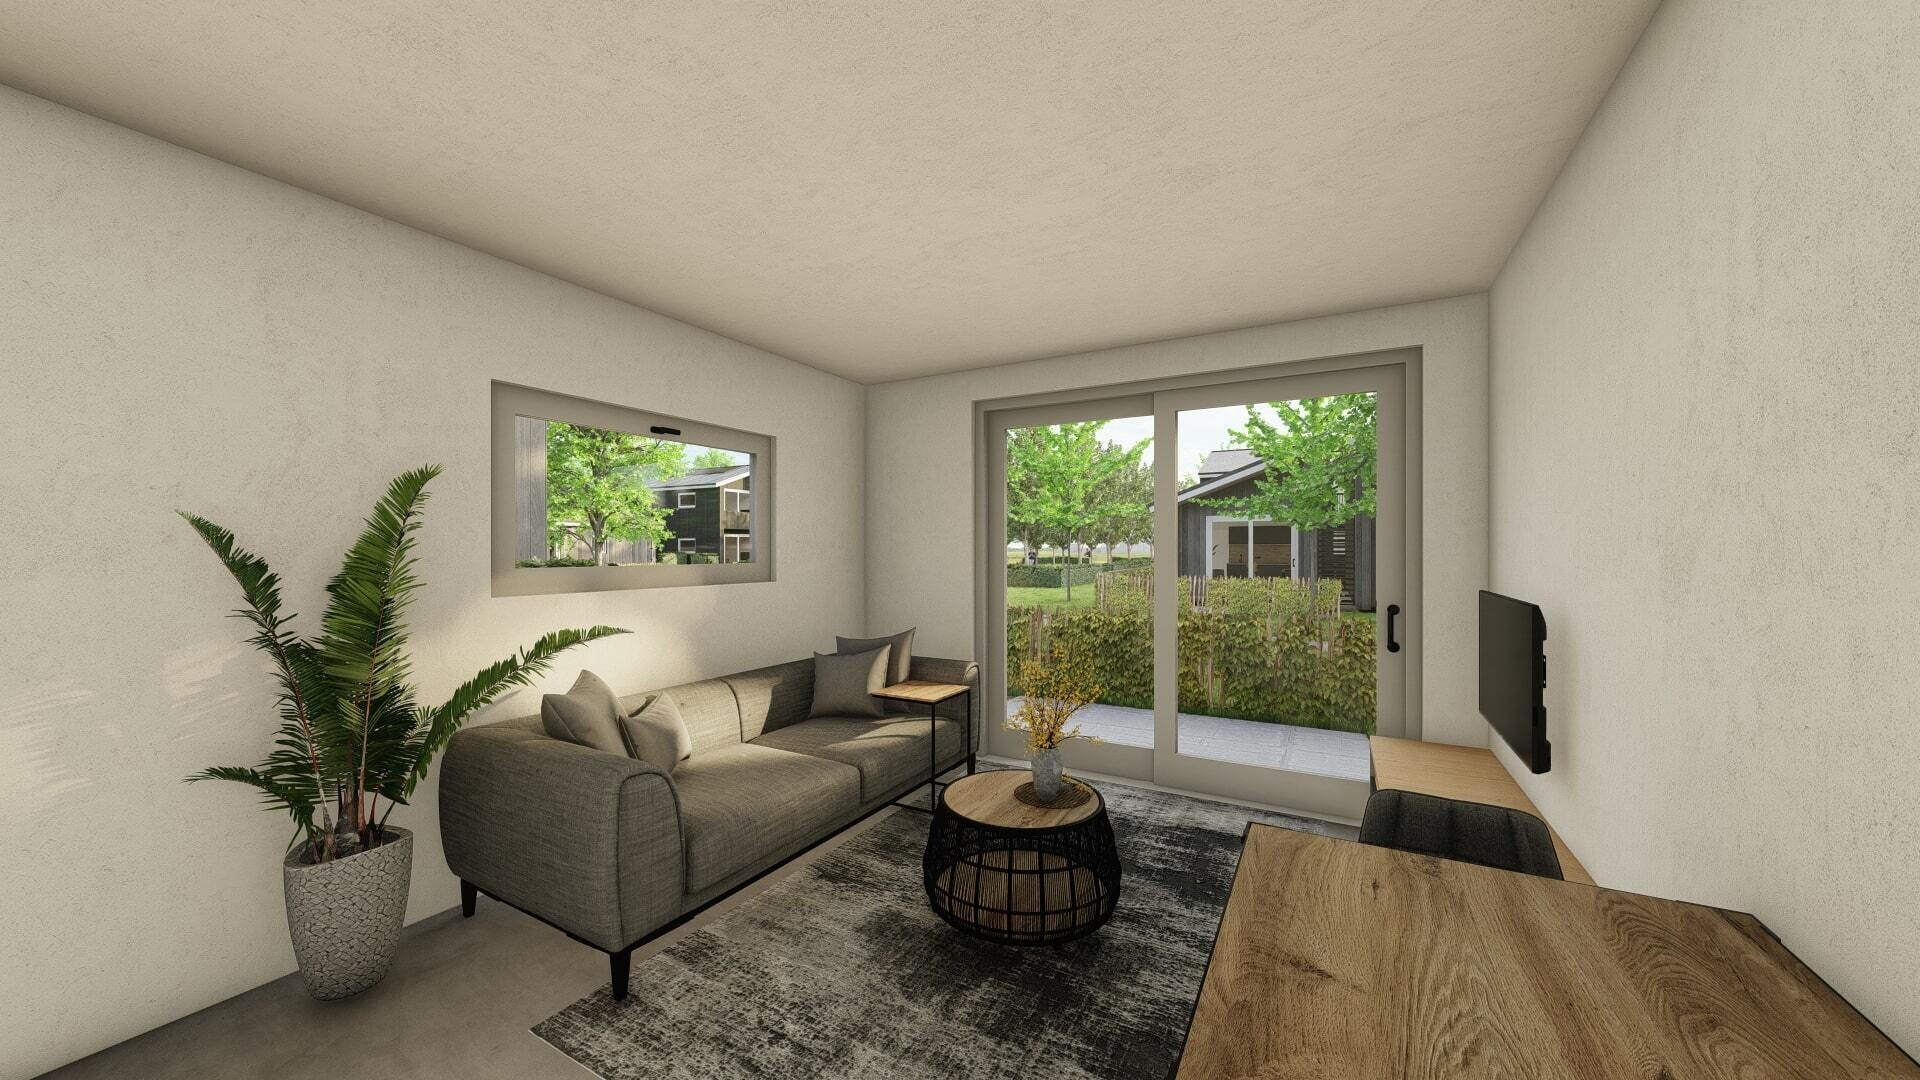 Impressie van woonkamer van flexwoning met bank, tv-meubel en salontafeltje